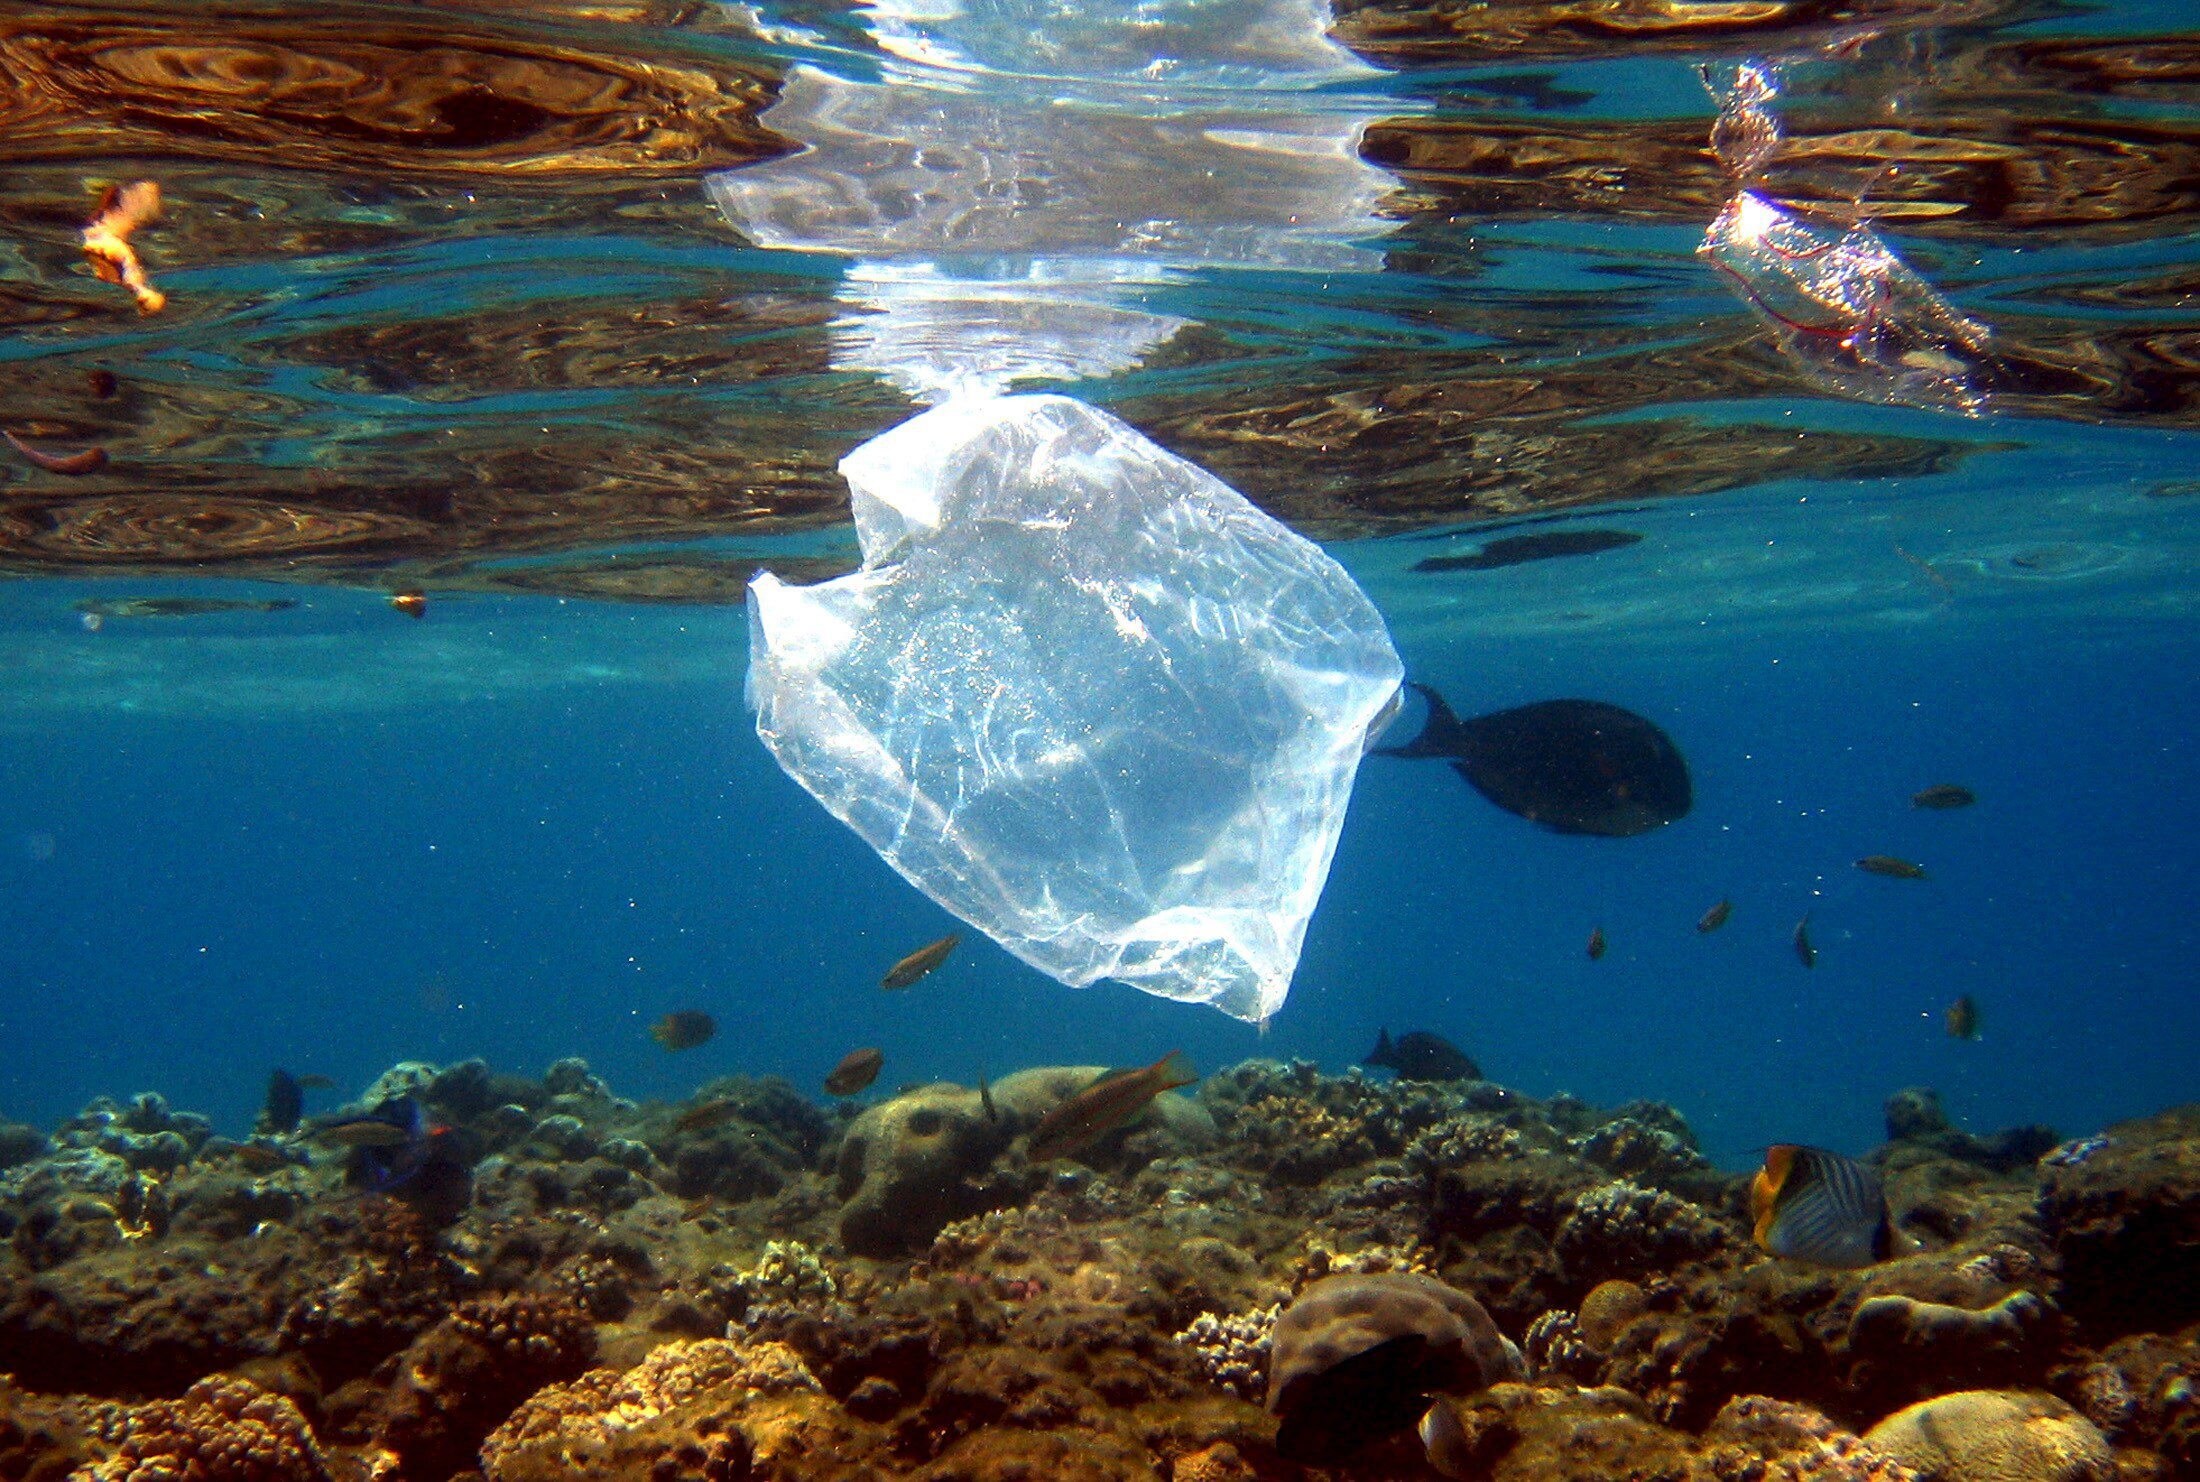 Opvallend pleidooi vóór plastic zak in winkels: "Die verschrikkelijke beelden van oceanen vol plastic? Die liggen niet in Europa"